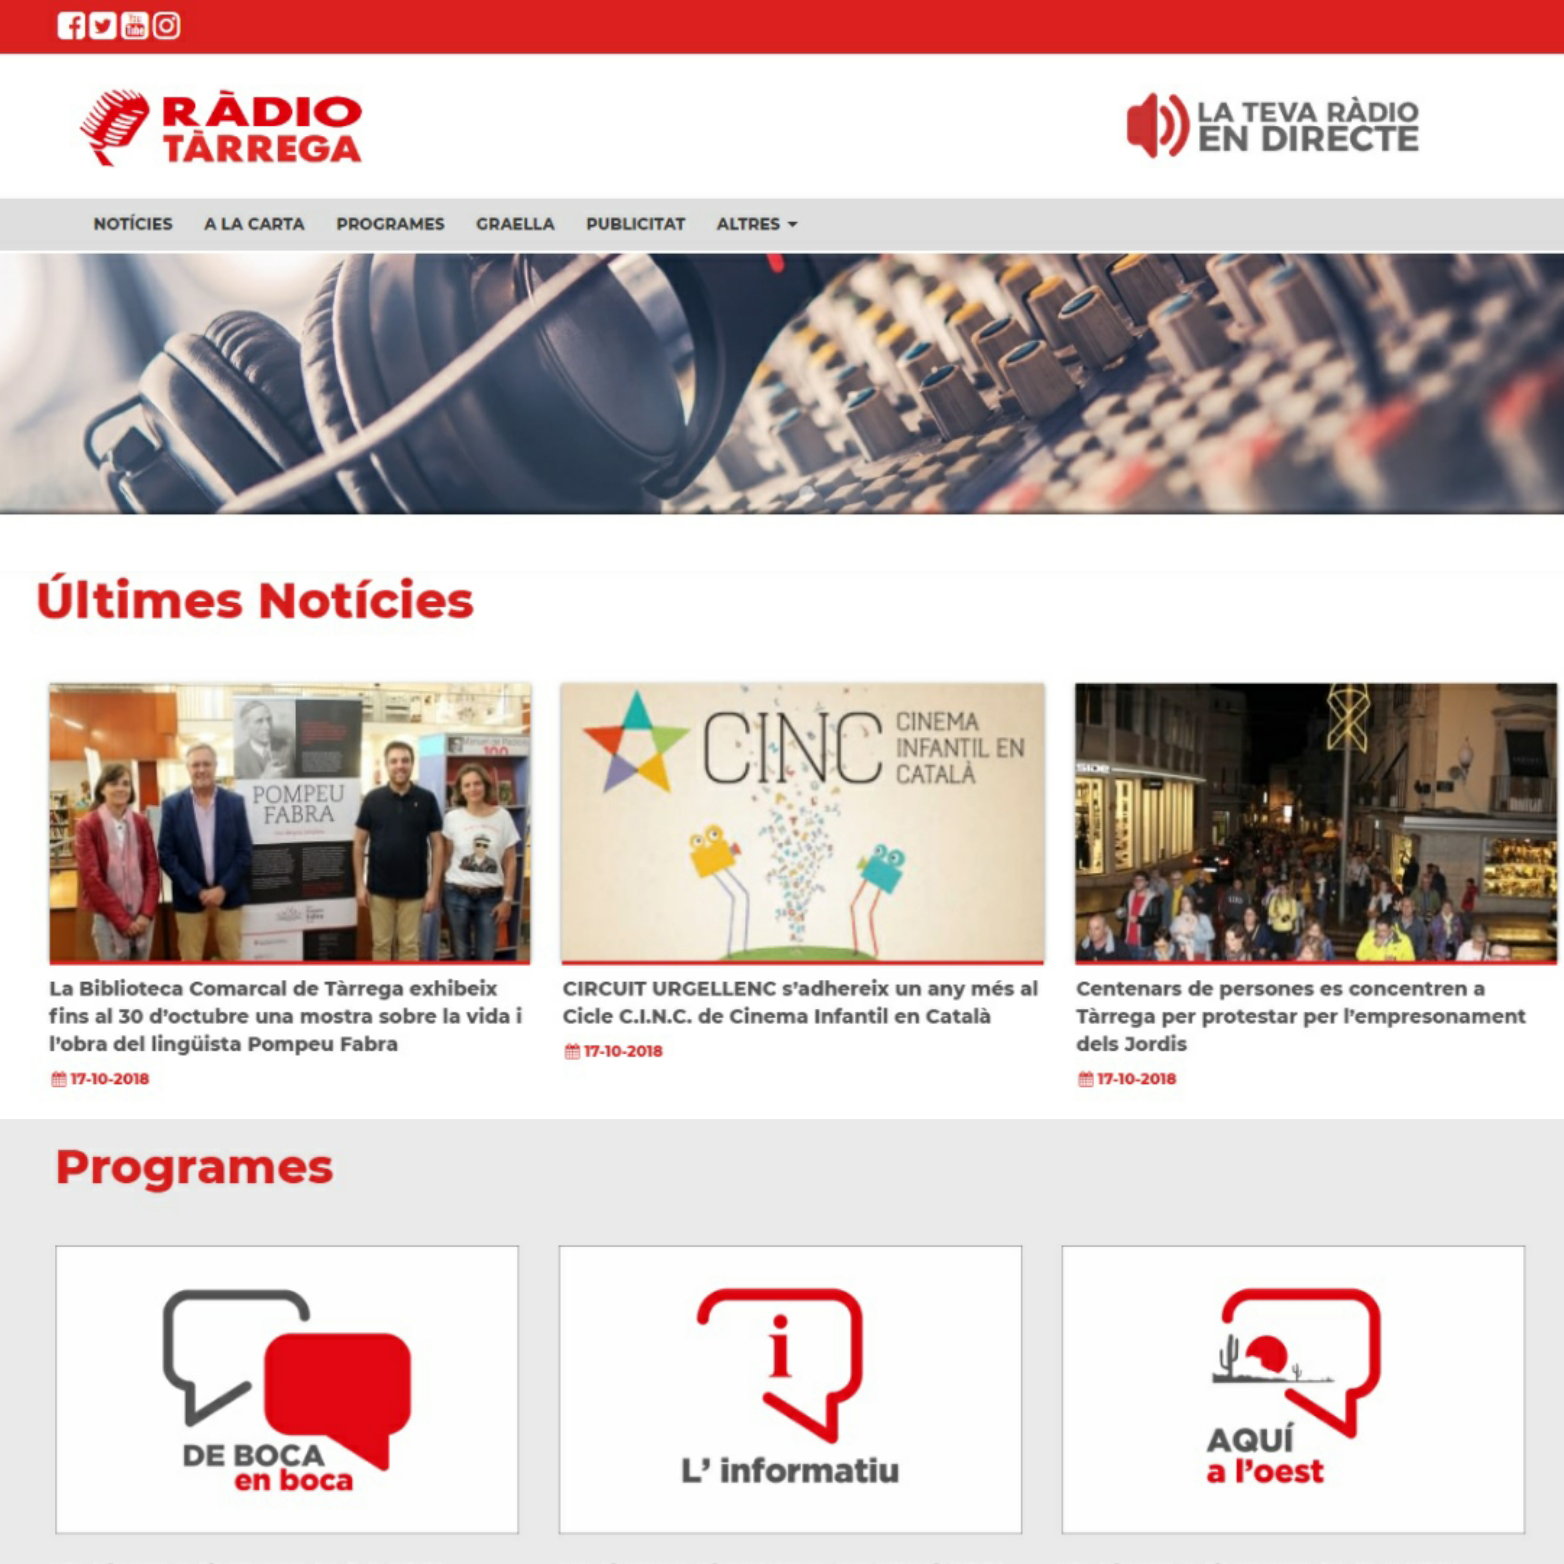 El portal web de l’emissora municipal Ràdio Tàrrega (92.3 FM) renova la seva imatge i continguts